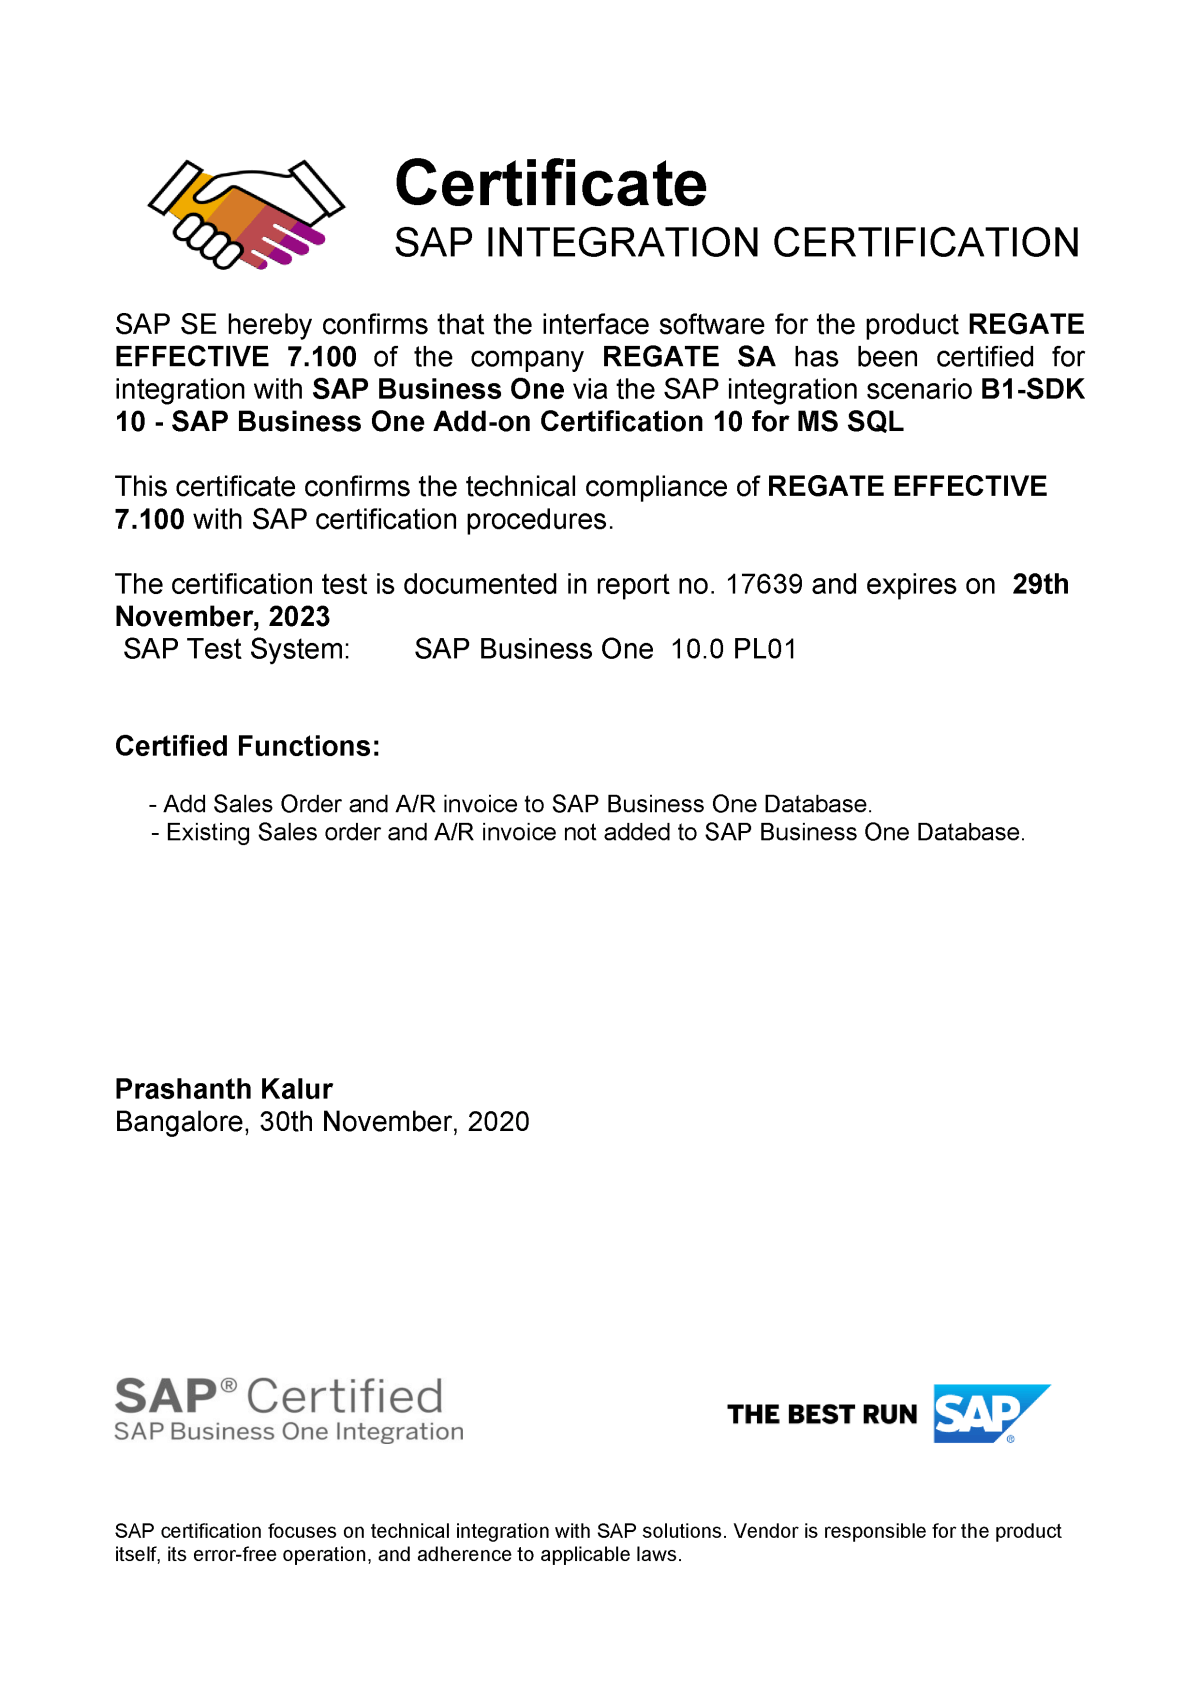 Regate SAP Certificate